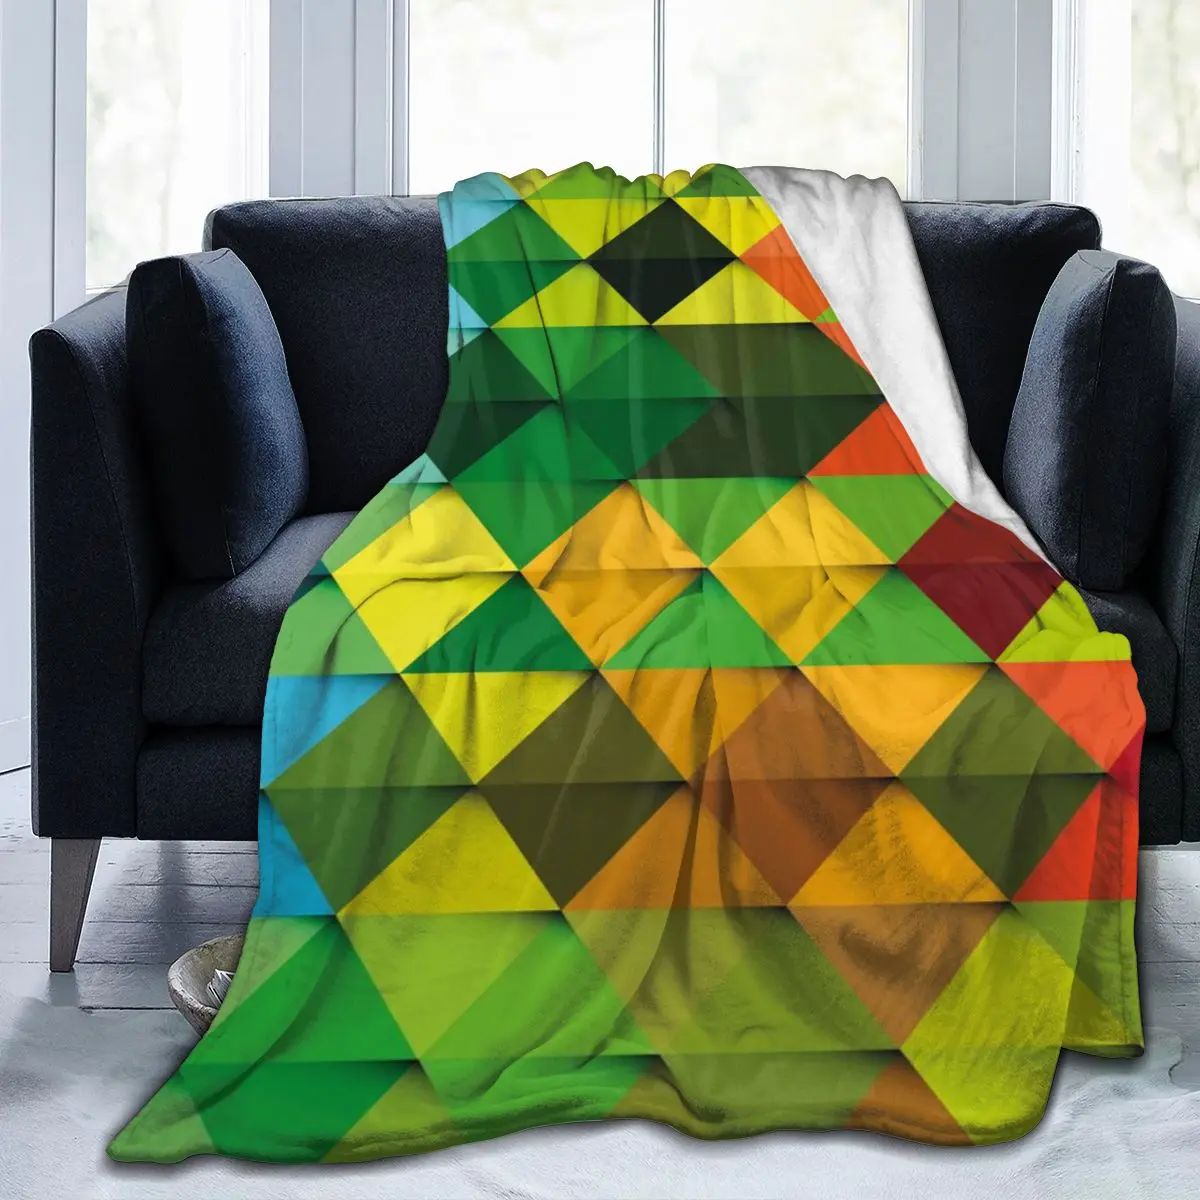 

Новое фланелевое одеяло с индивидуальным принтом 3D, постельное белье, мягкое одеяло, покрывало для кровати, домашний текстиль, украшение